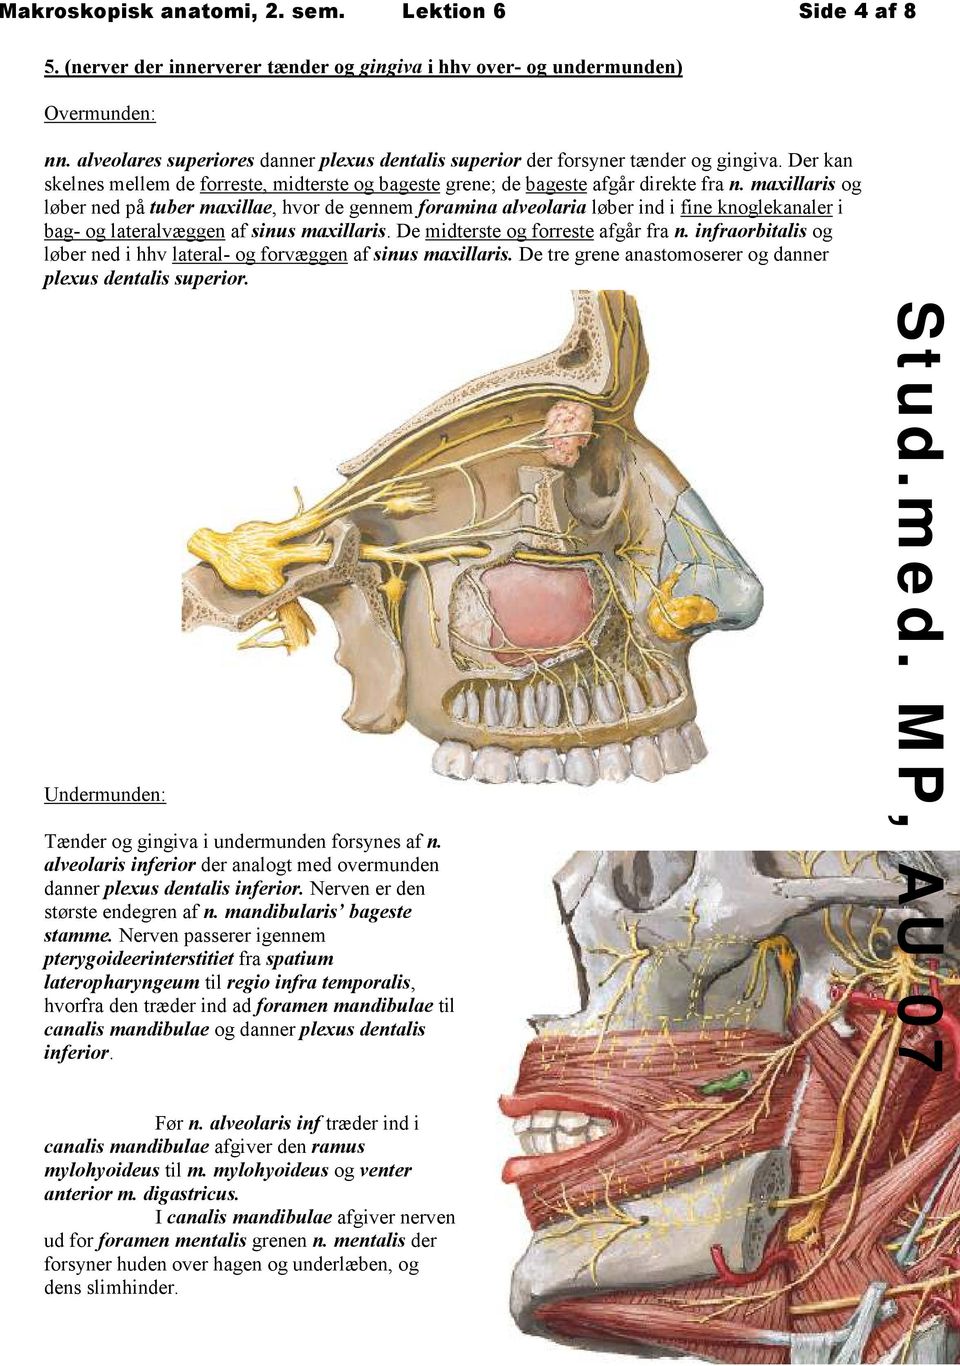 maxillaris og løber ned på tuber maxillae, hvor de gennem foramina alveolaria løber ind i fine knoglekanaler i bag- og lateralvæggen af sinus maxillaris. De midterste og forreste afgår fra n.